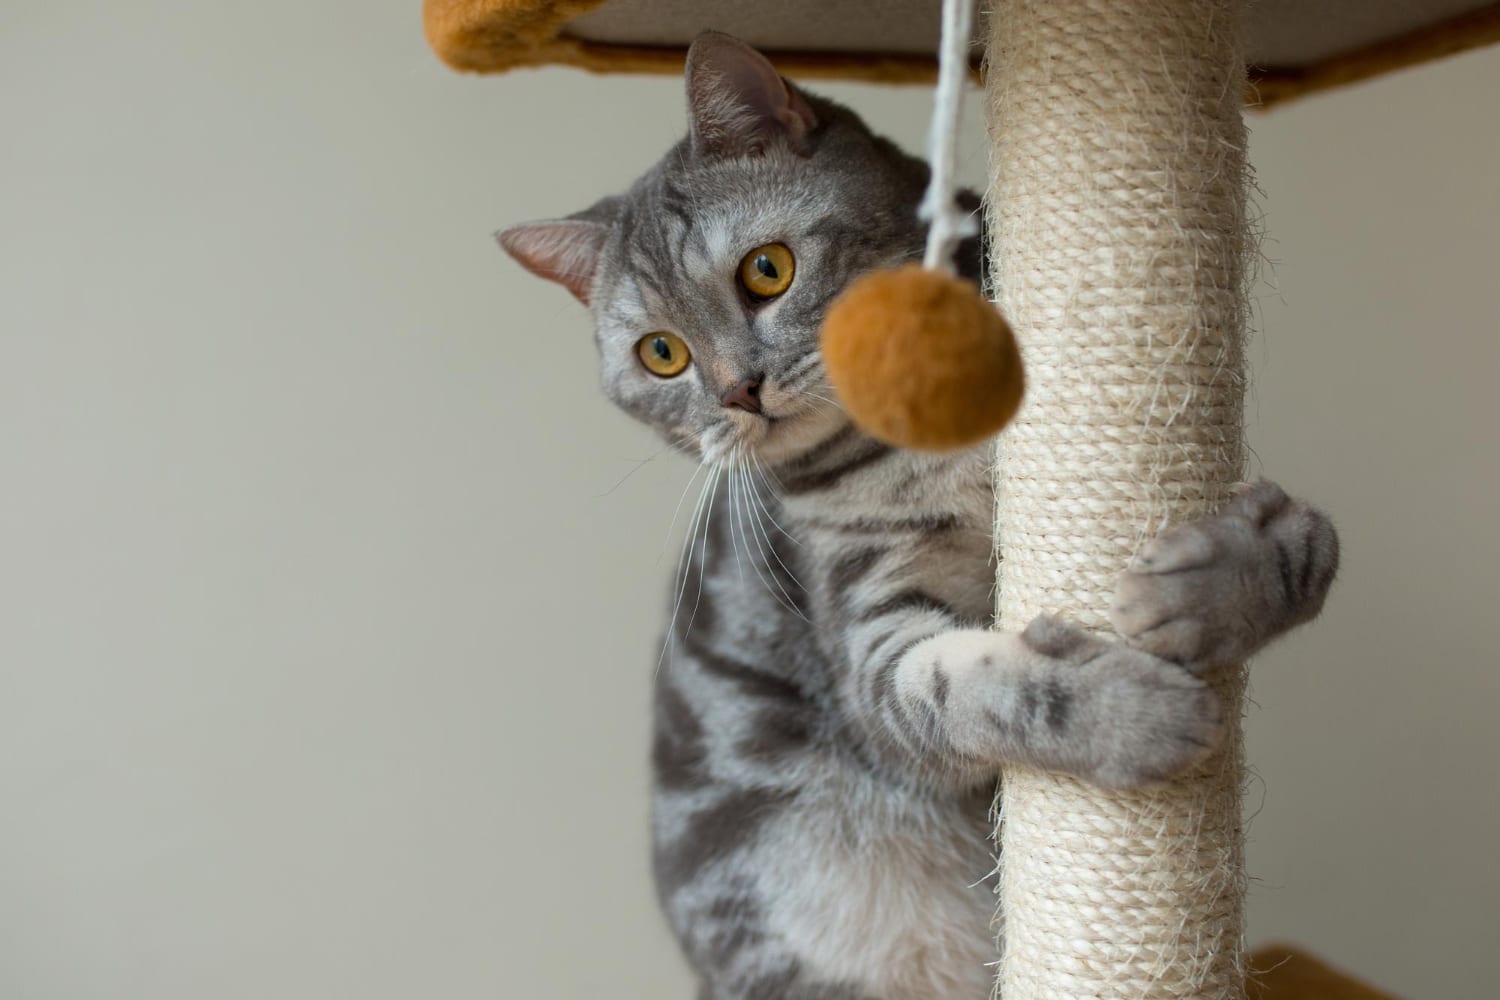 Juguetes para gato: el regalo ideal para los felinos en su día<span class="wtr-time-wrap after-title"><span class="wtr-time-number">2</span> min de lectura</span>